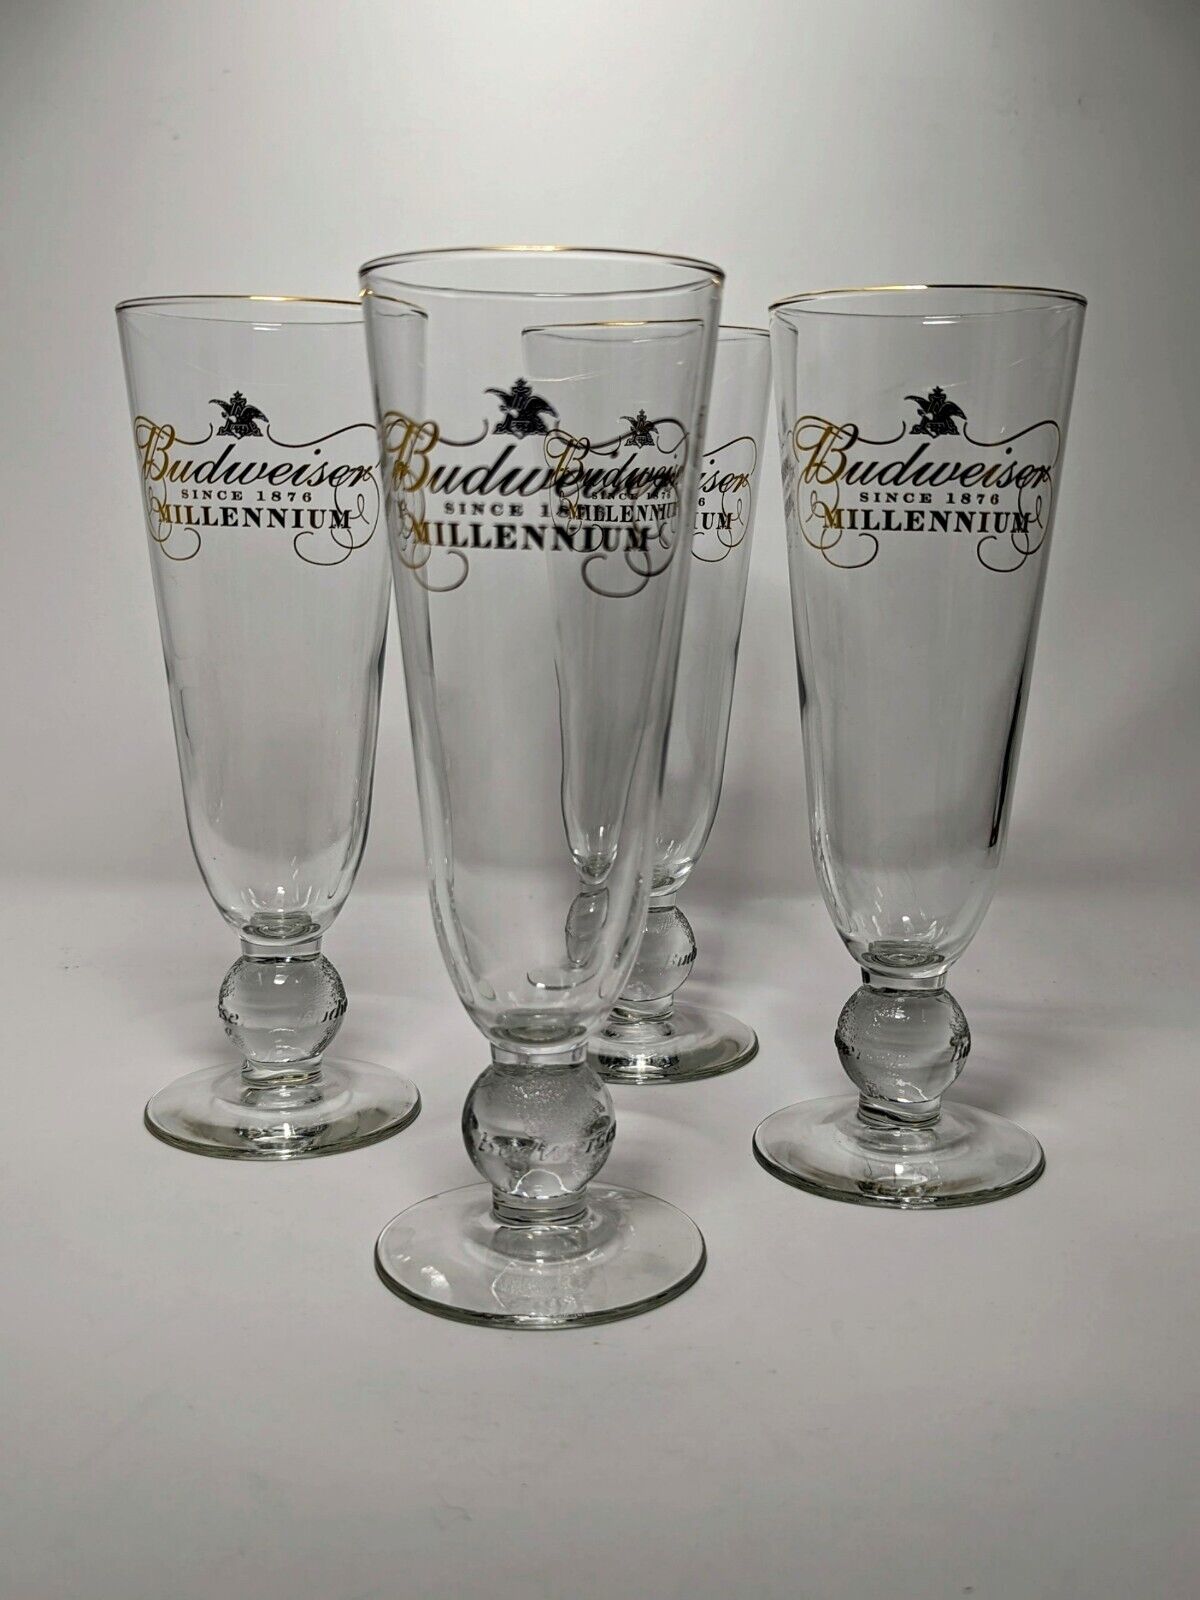 Vintage Budweiser Millennium Glassware Set Of 4 Anheuser Pilsner Beer since 1876